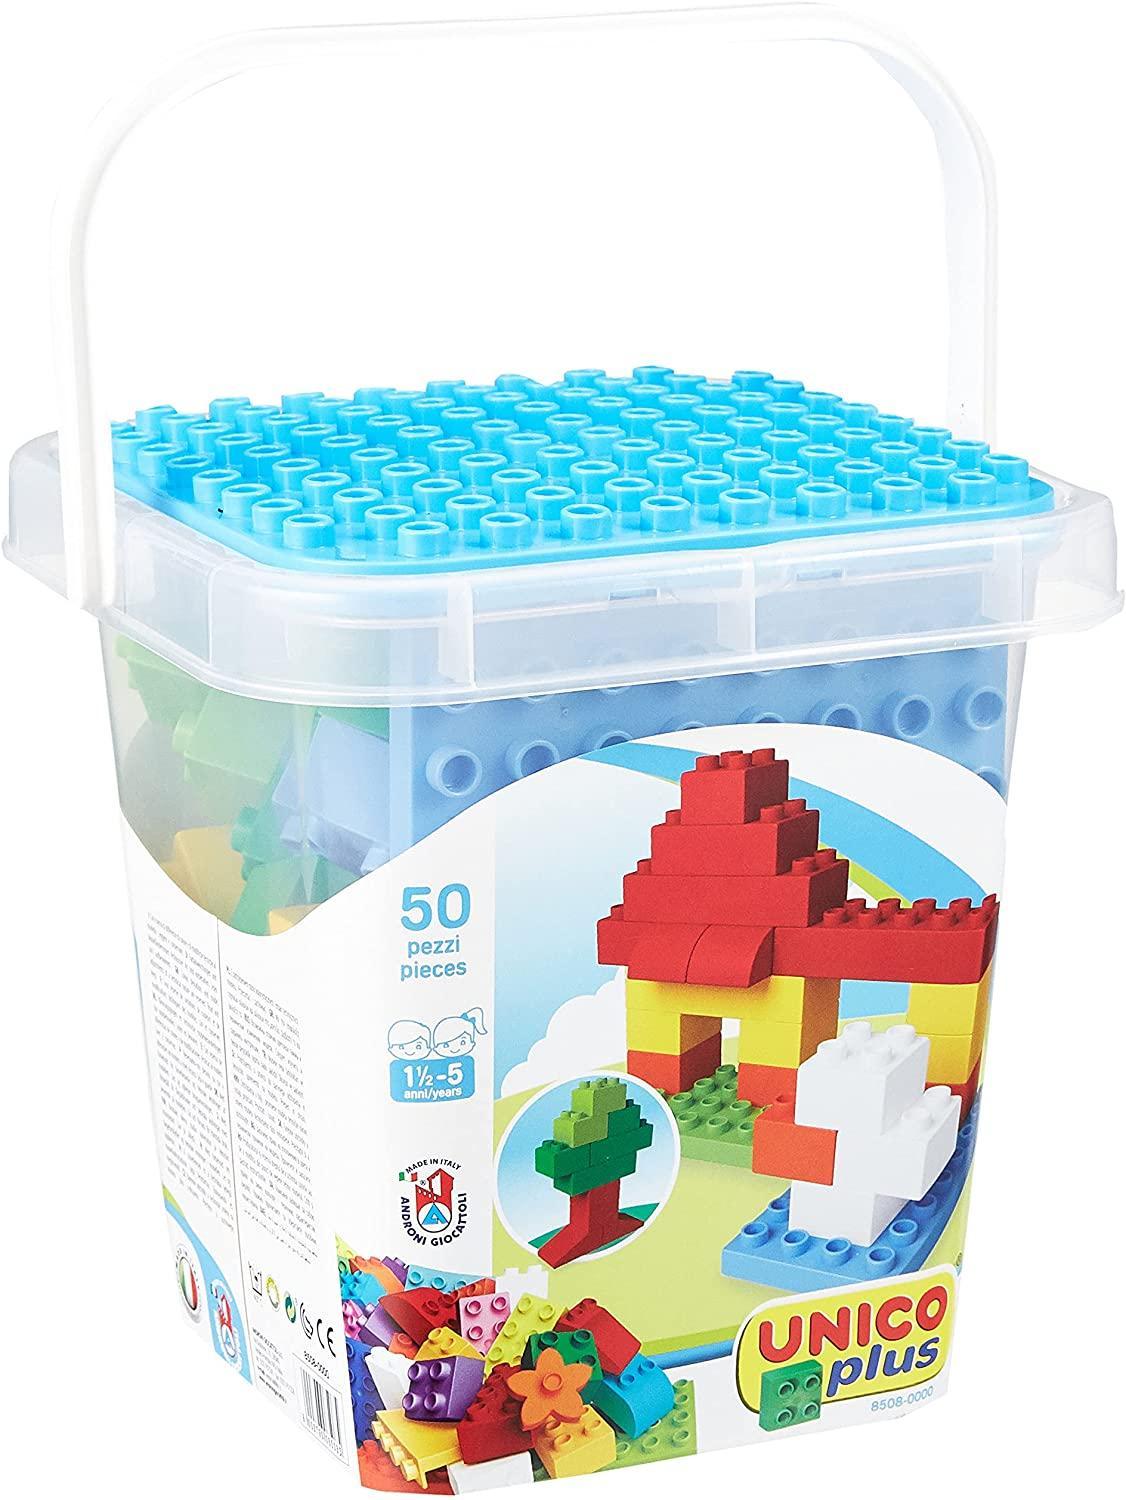 androni giocattoli androni giocattoli unico plus secchiello mattoncini colorati 50 pz